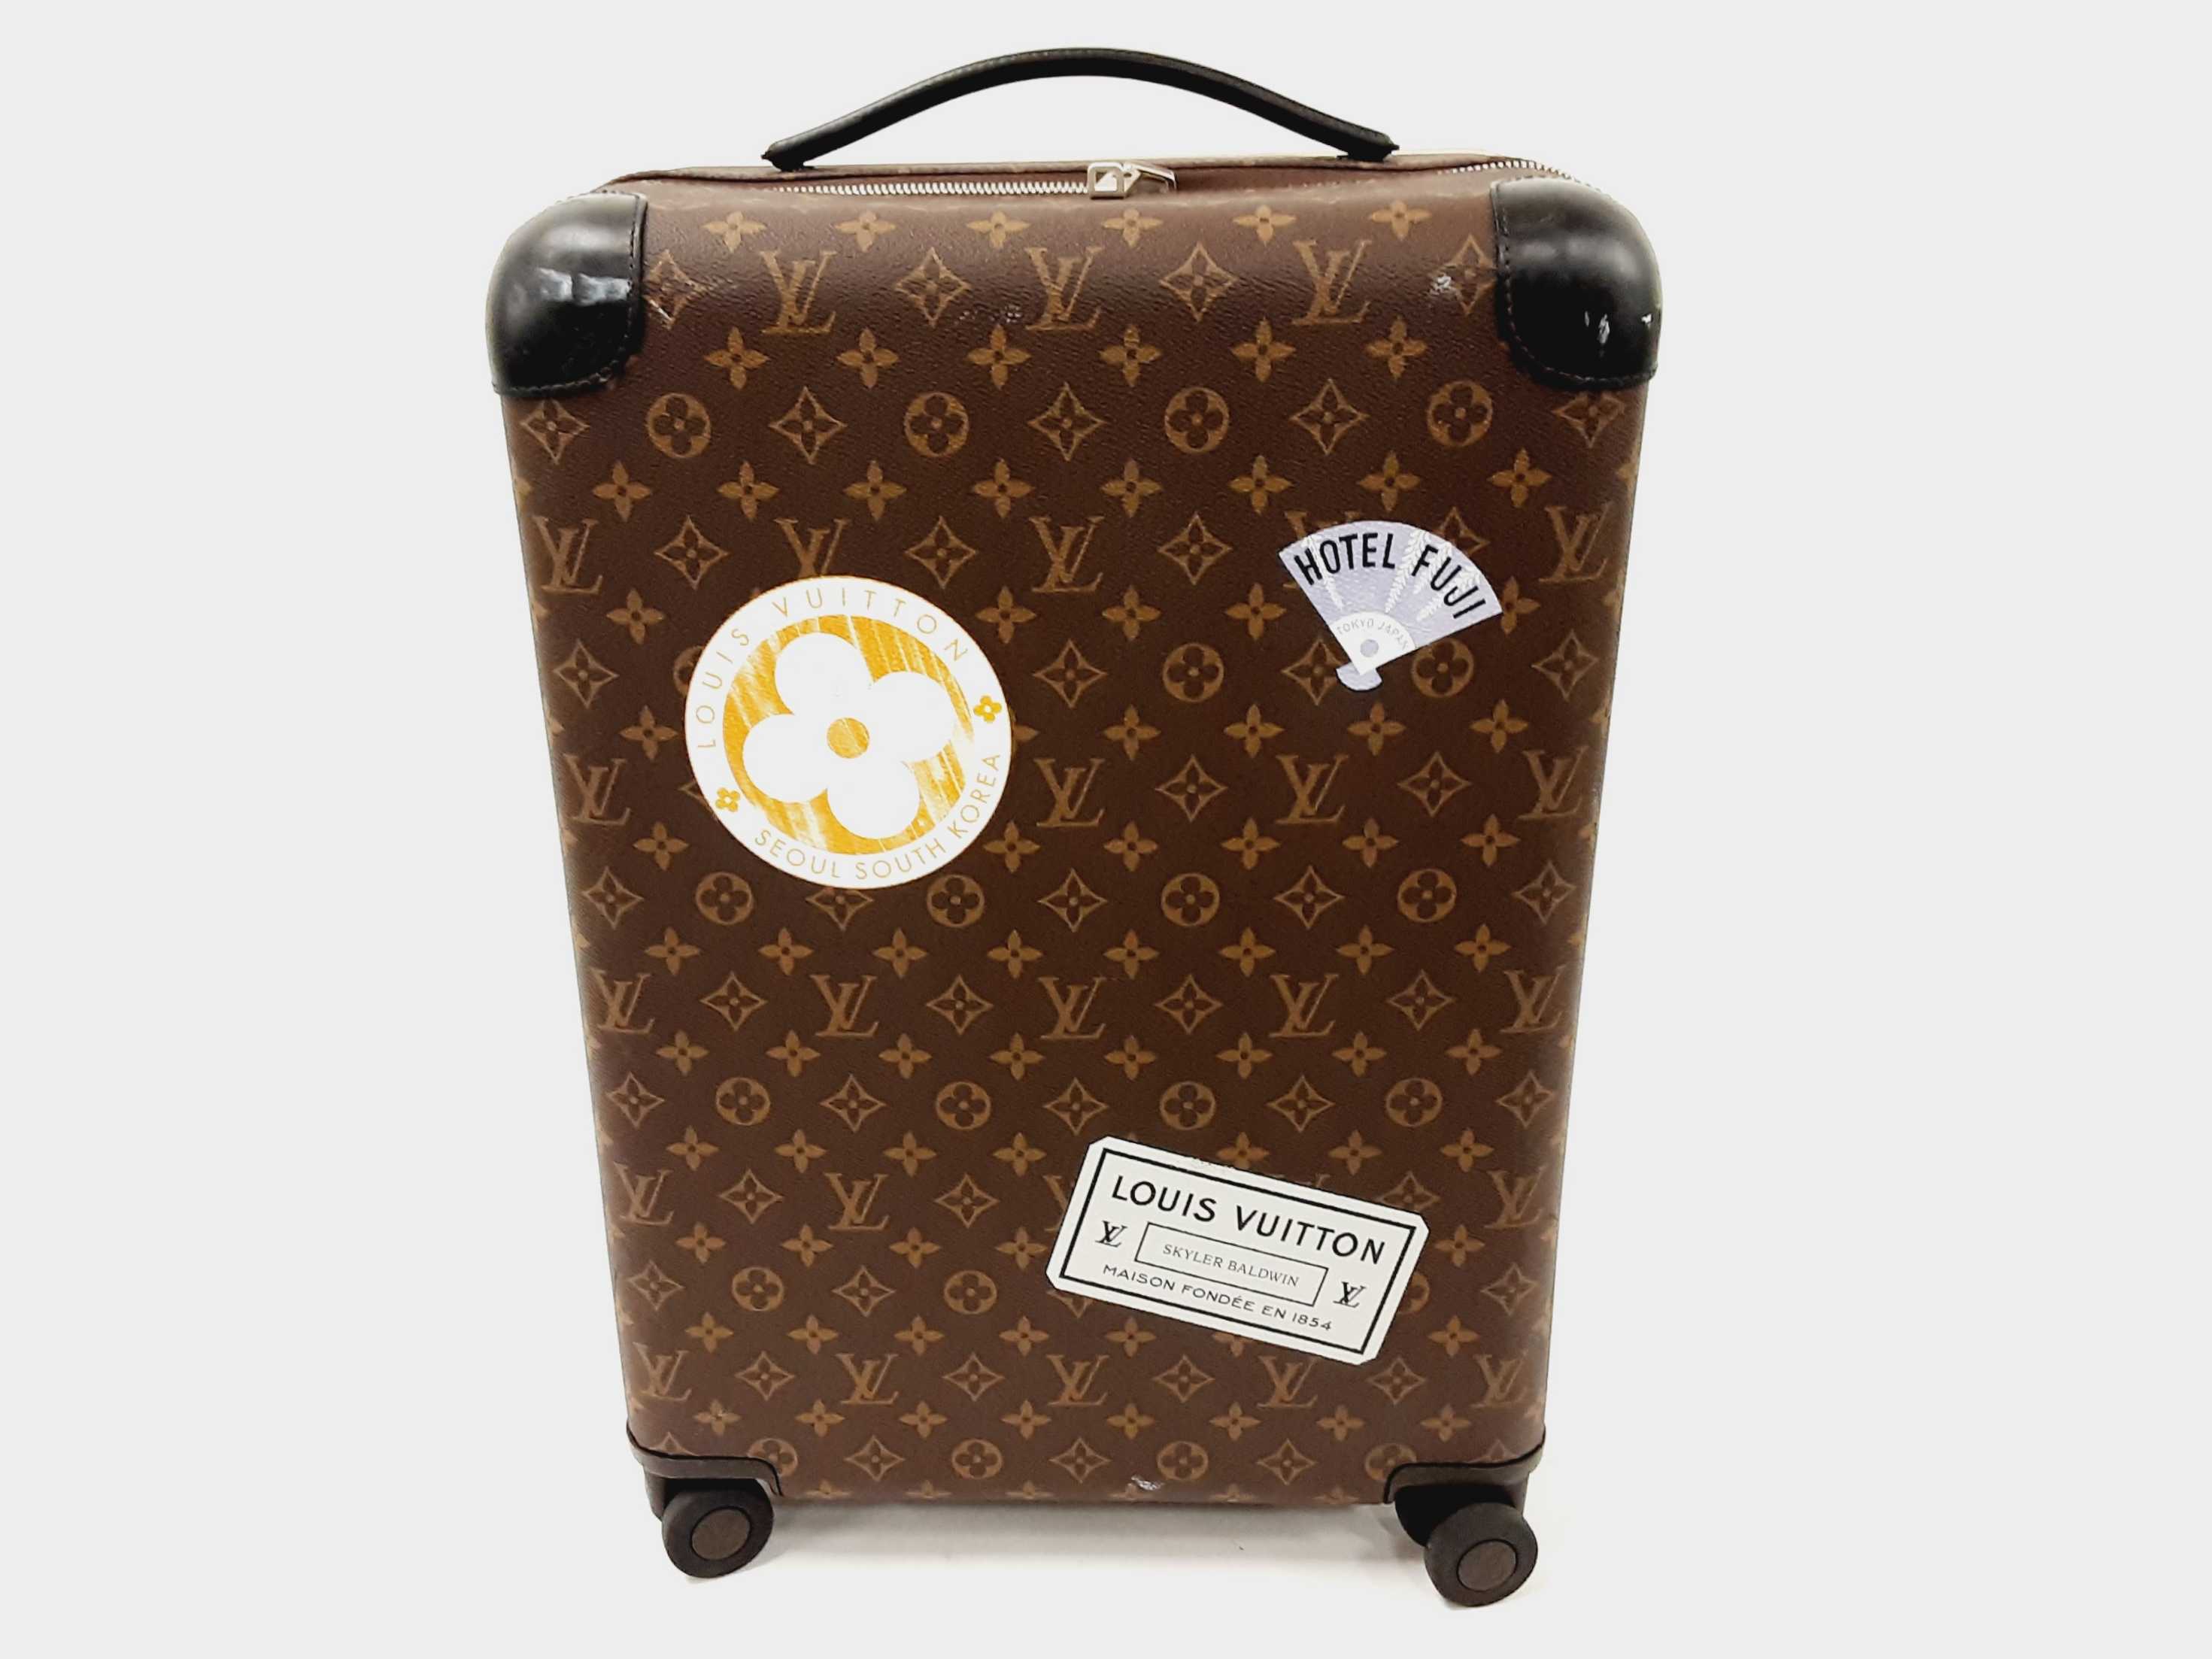 lv luggage suitcase